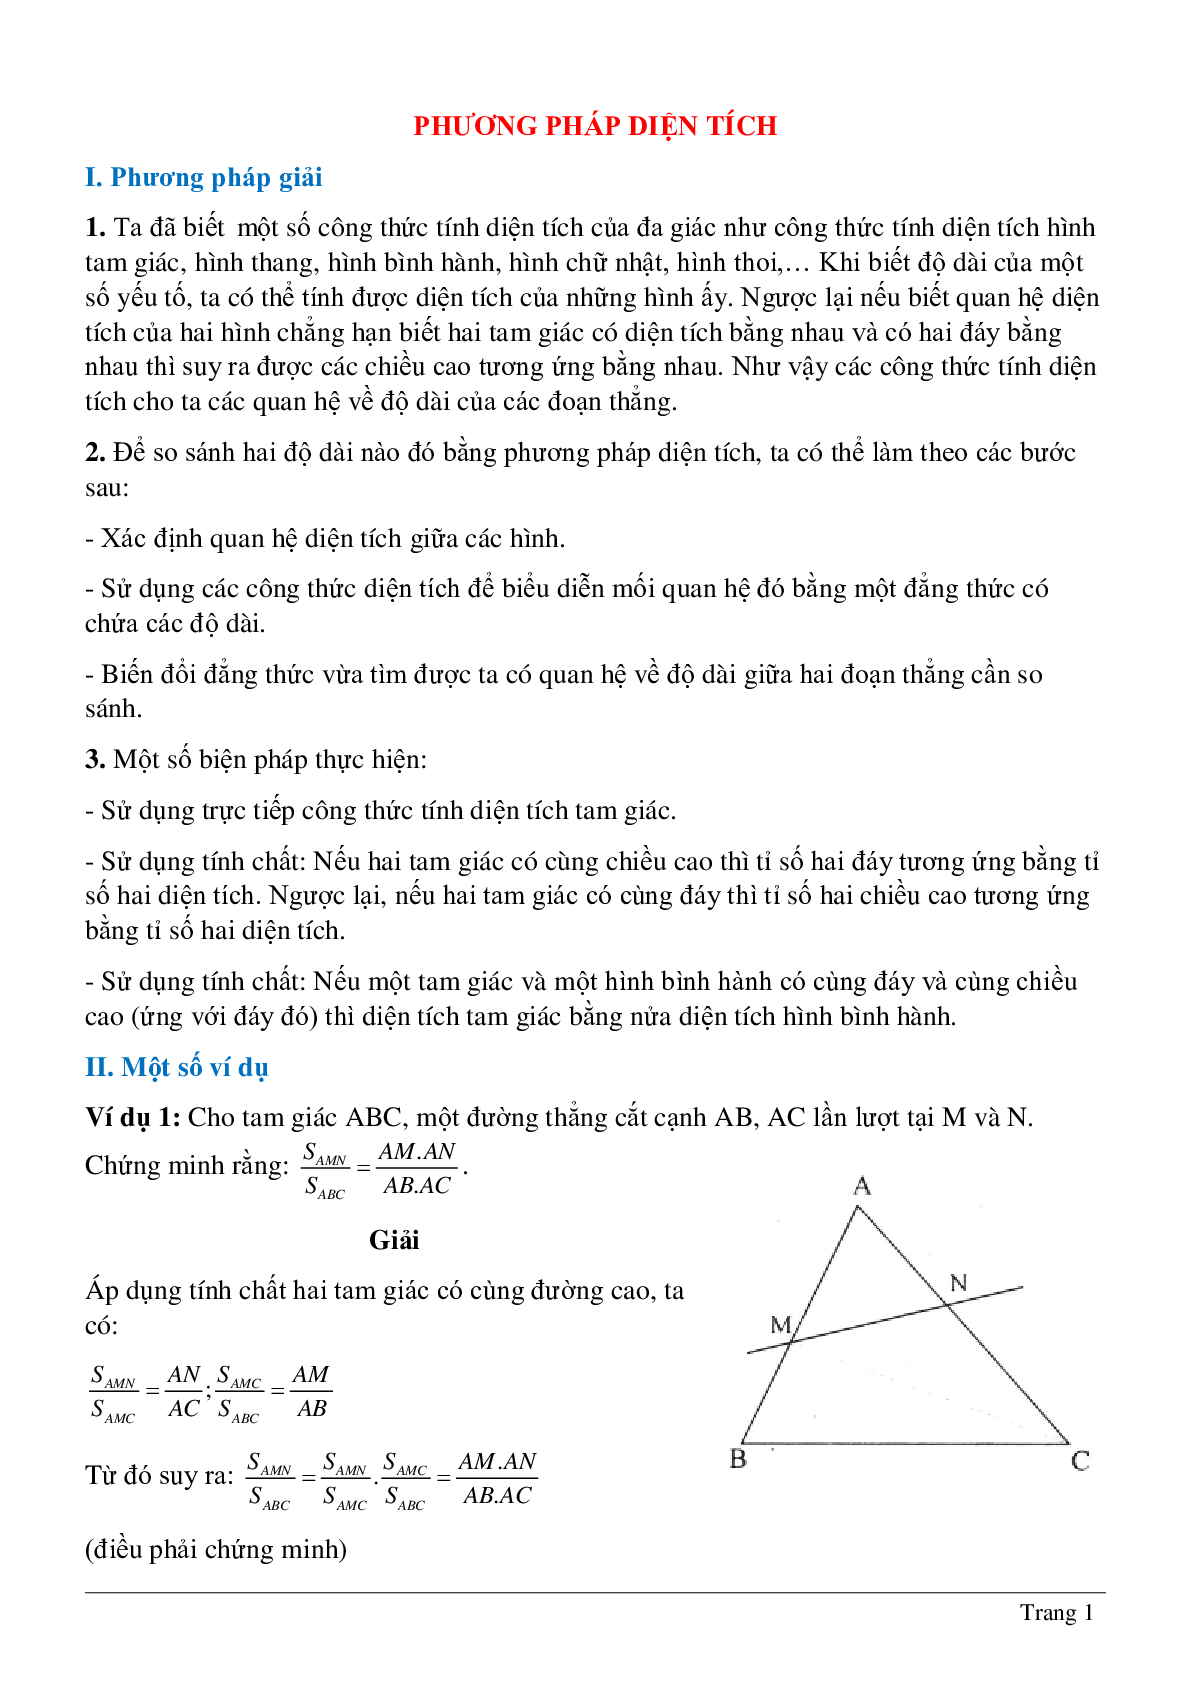 Phương pháp diện tích - Hình học toán 8 (trang 1)